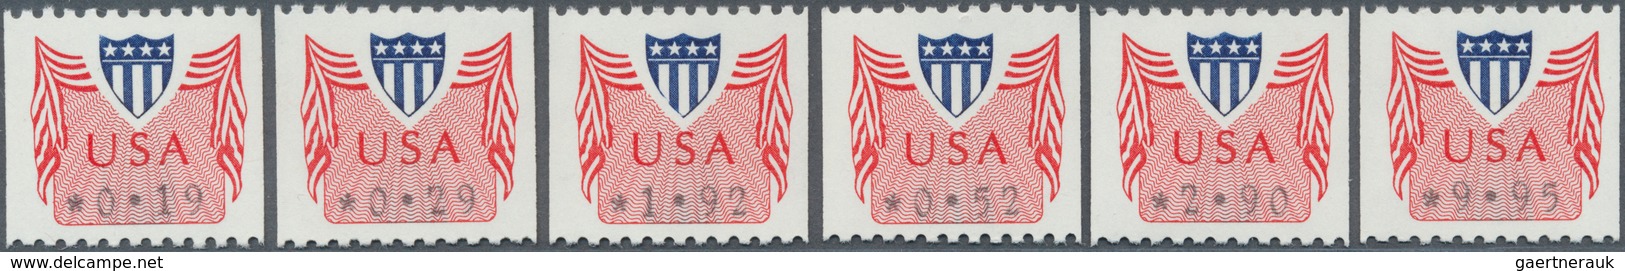 29565A Vereinigte Staaten Von Amerika - Automatenmarken: 1989 - 2003. ATM Postage Labels. Solid Collection - Automaatzegels [ATM]